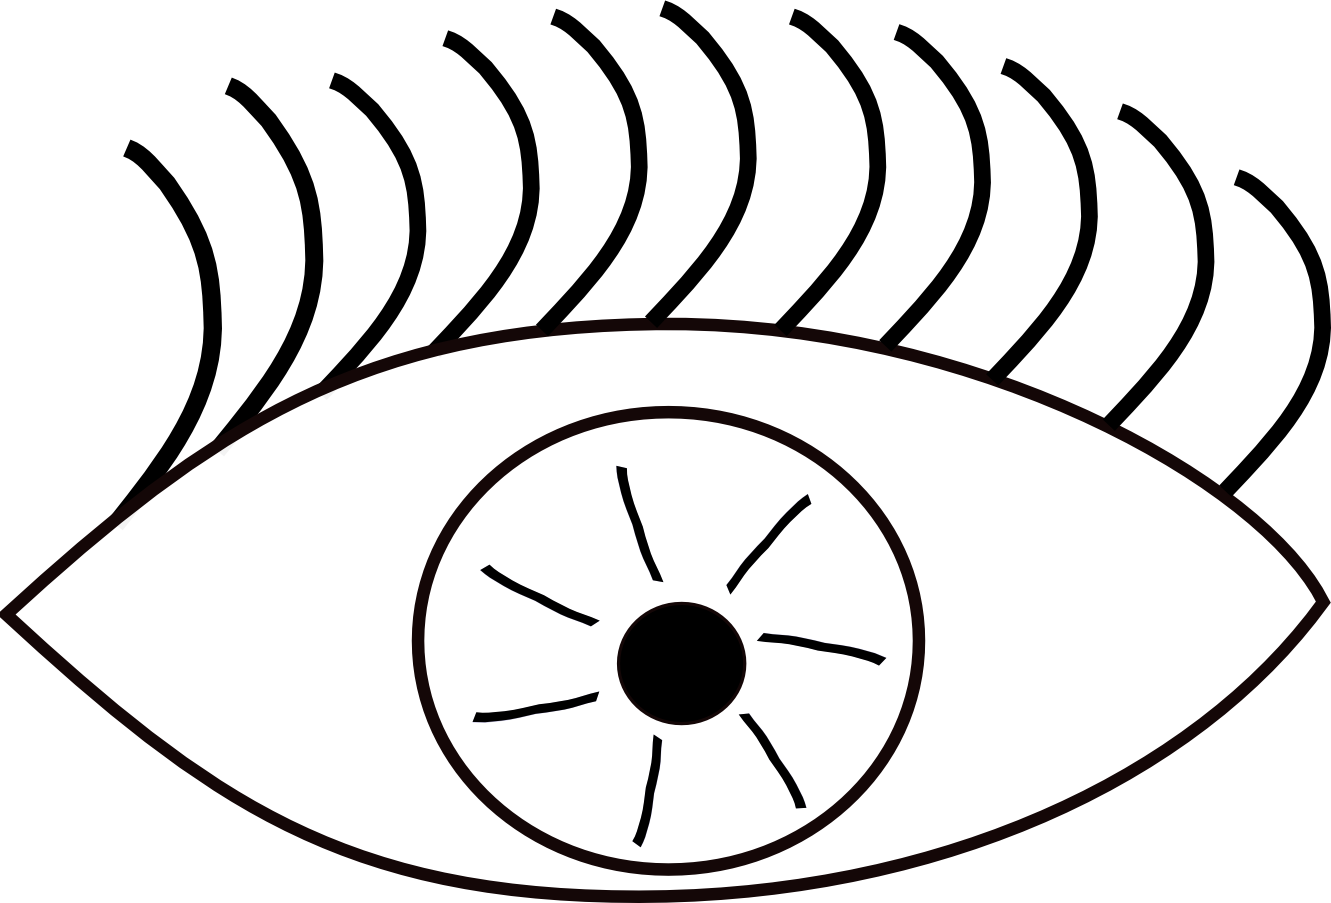 Eyeball eye clip art black and white